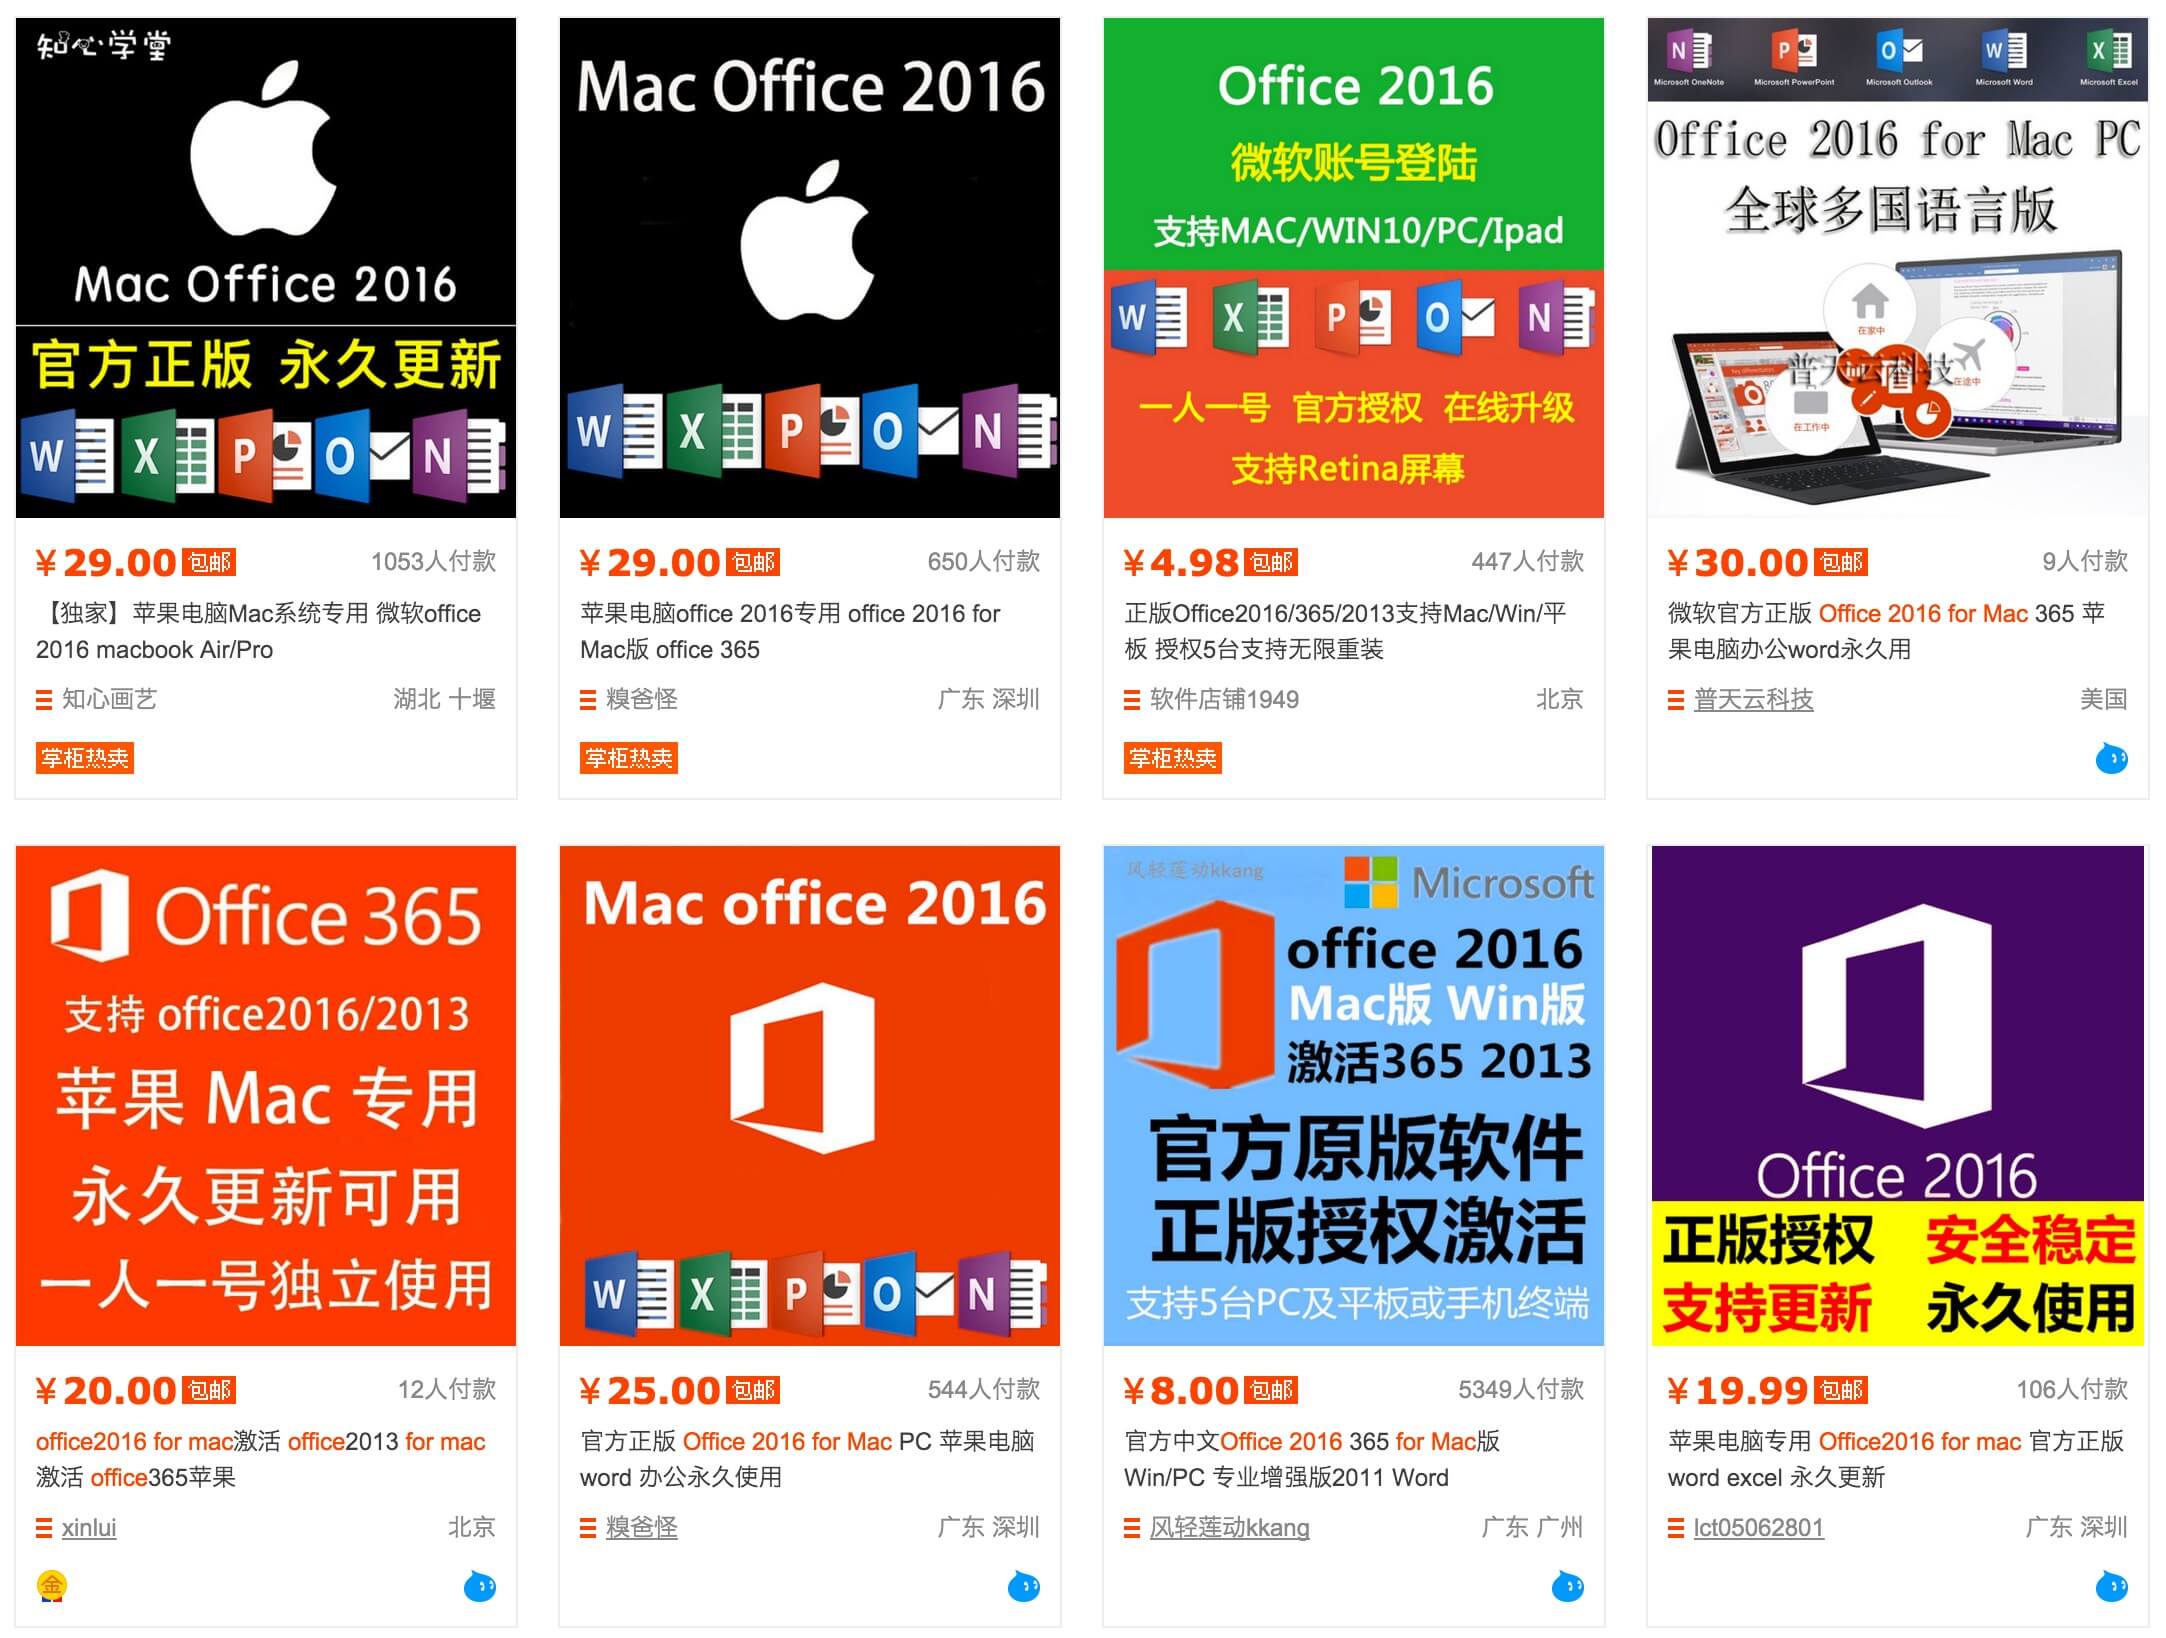 中国のネットショップで Office 16 For Mac が僅か400円で買えるんだが たびハック